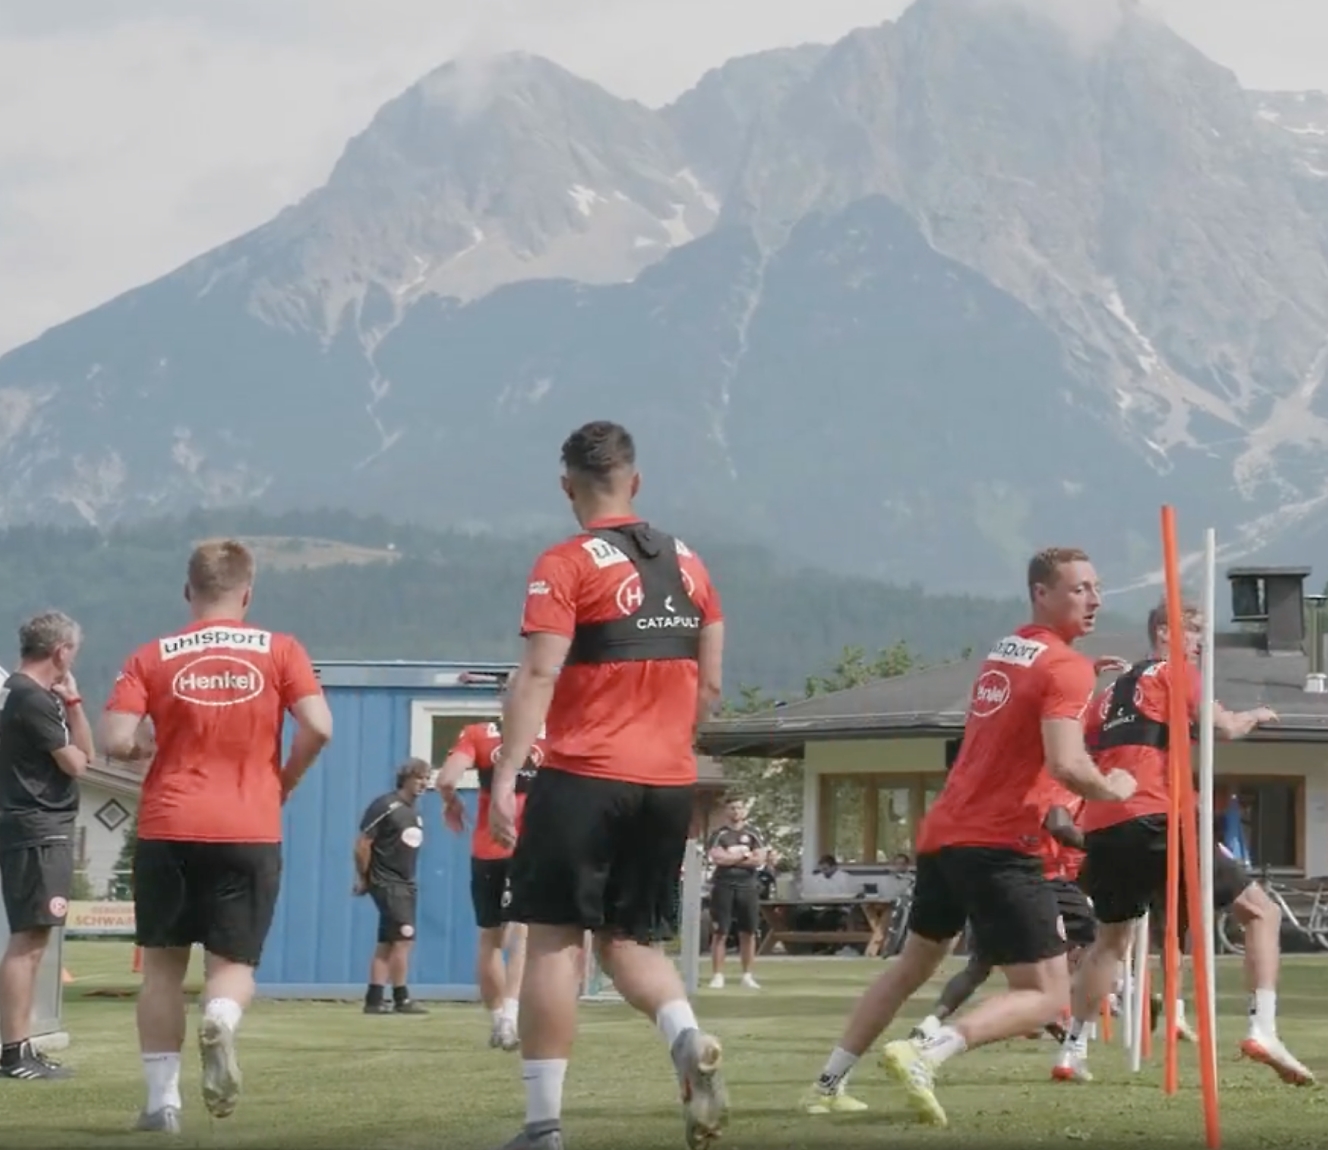 Voetbalspelers in rode shirts trainen buiten met een uitzicht op de bergen op de achtergrond.